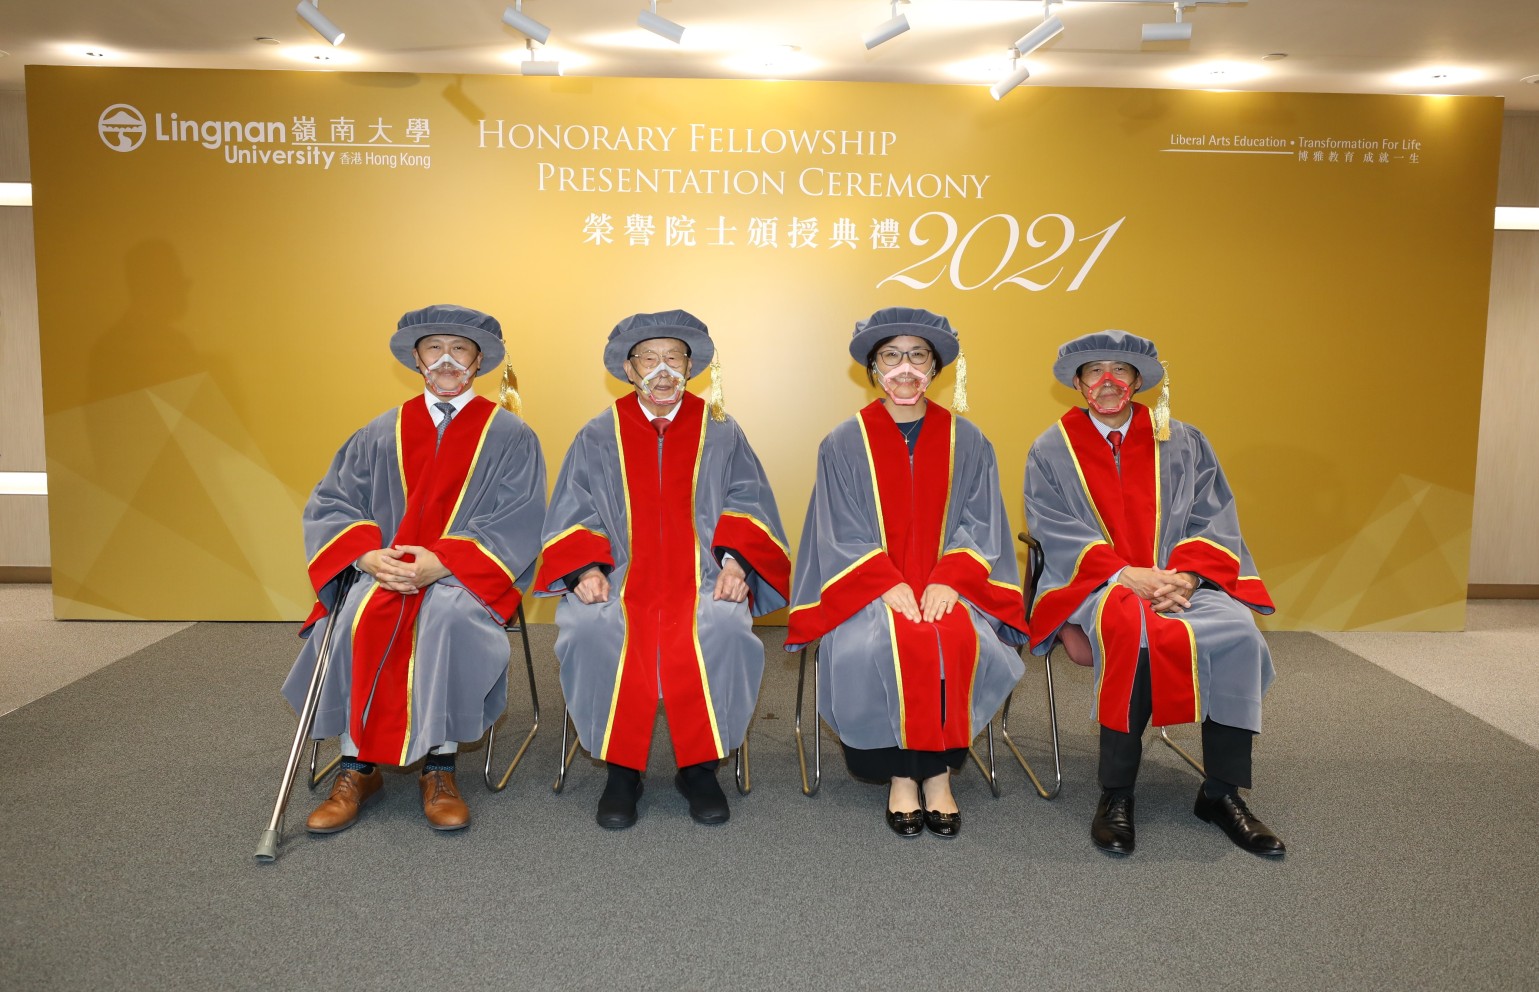 四位榮譽院士合照：（左起）葉少康先生、陳偉南先生、李美辰女士，以及葉成慶先生。